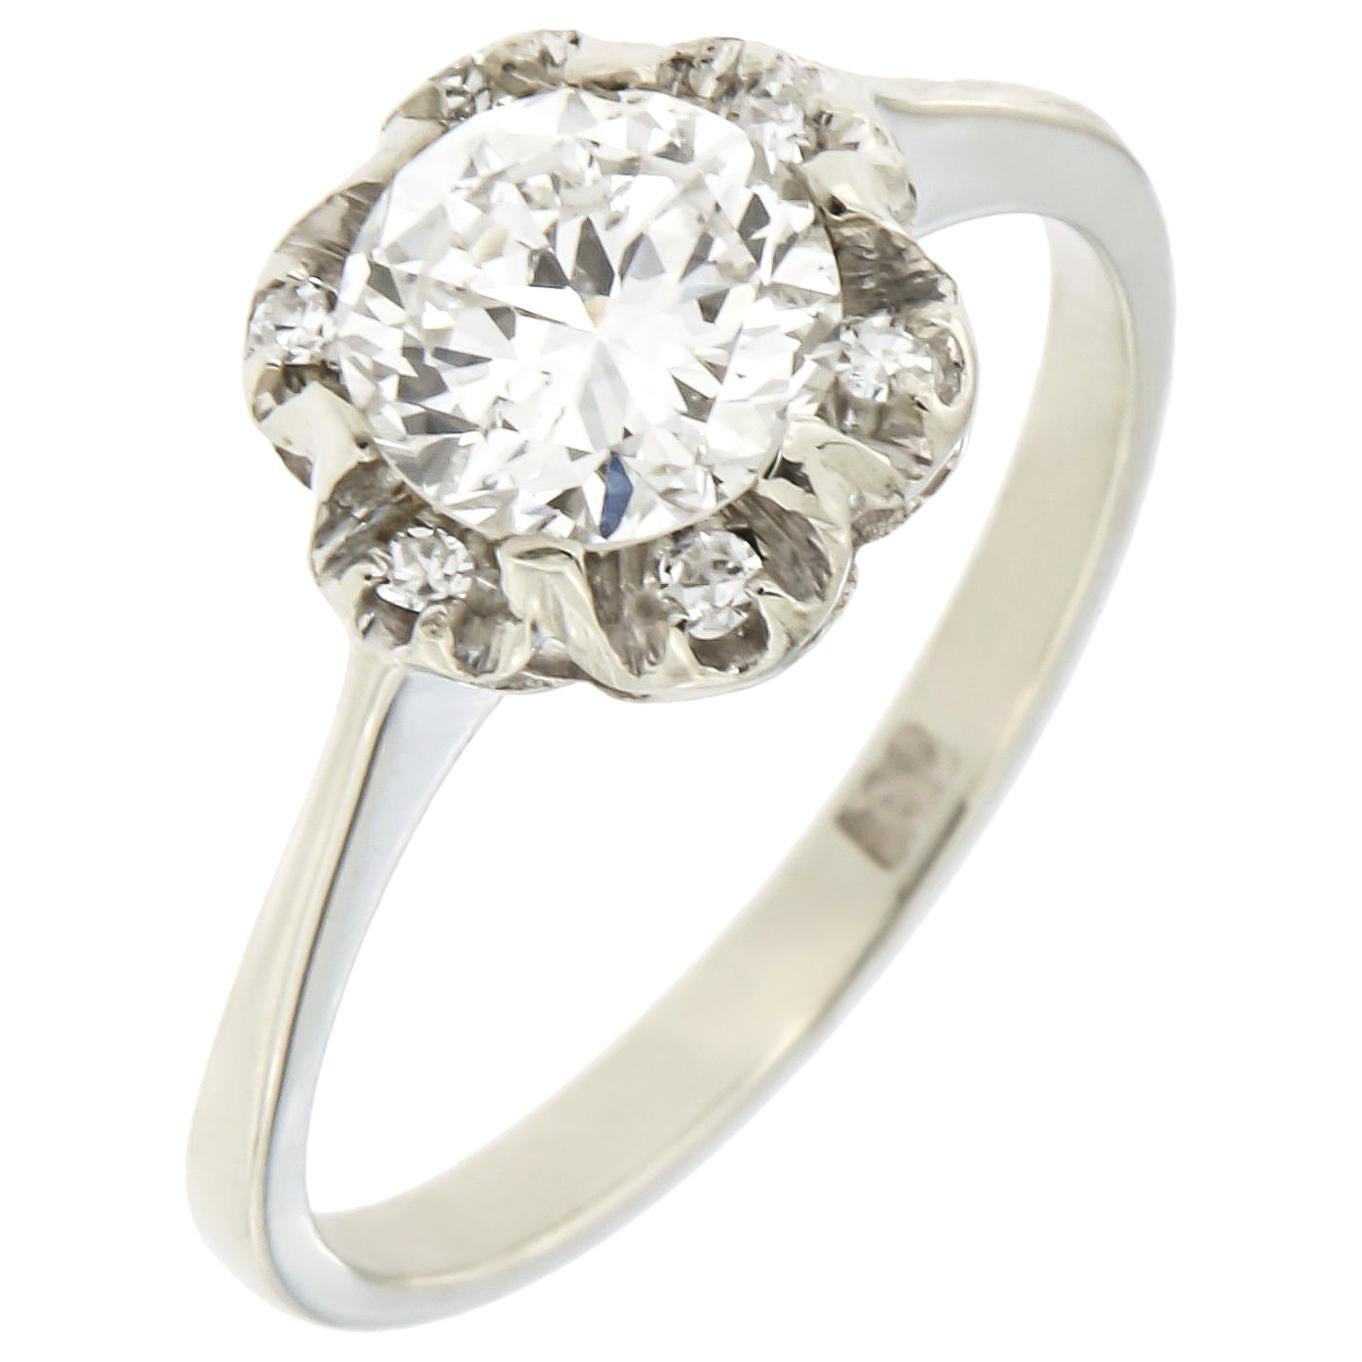 Antique Engagement Ring 0.95 Carat Diamond 18 Karat White Gold 